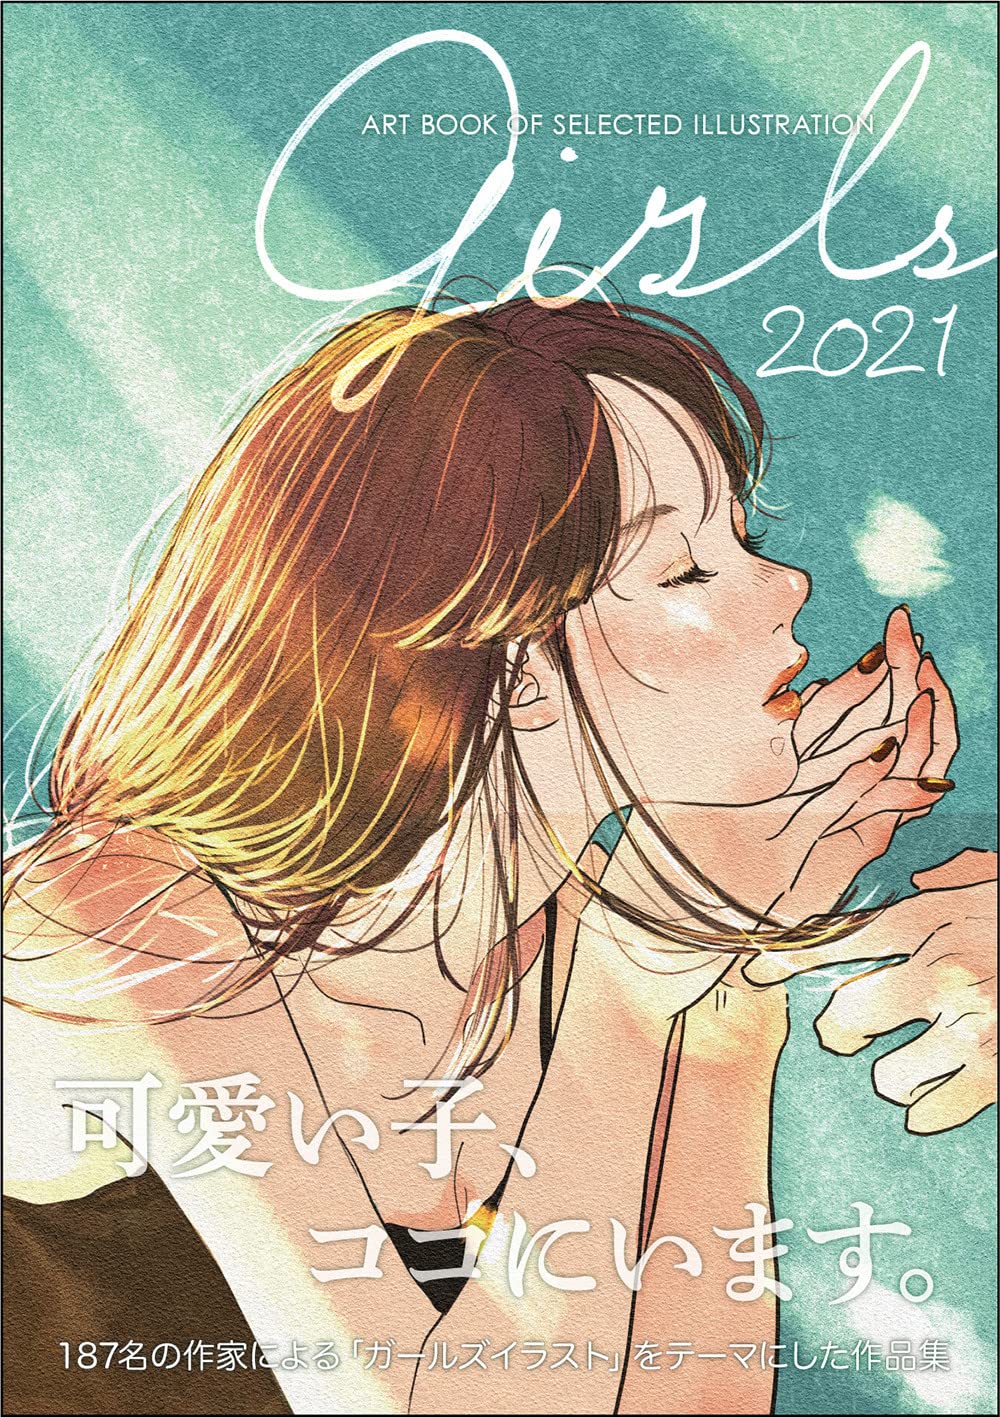 Girls ガ-ルズ 2021年度版 (ART BOOK OF SELECTED ILLUSTRATION)